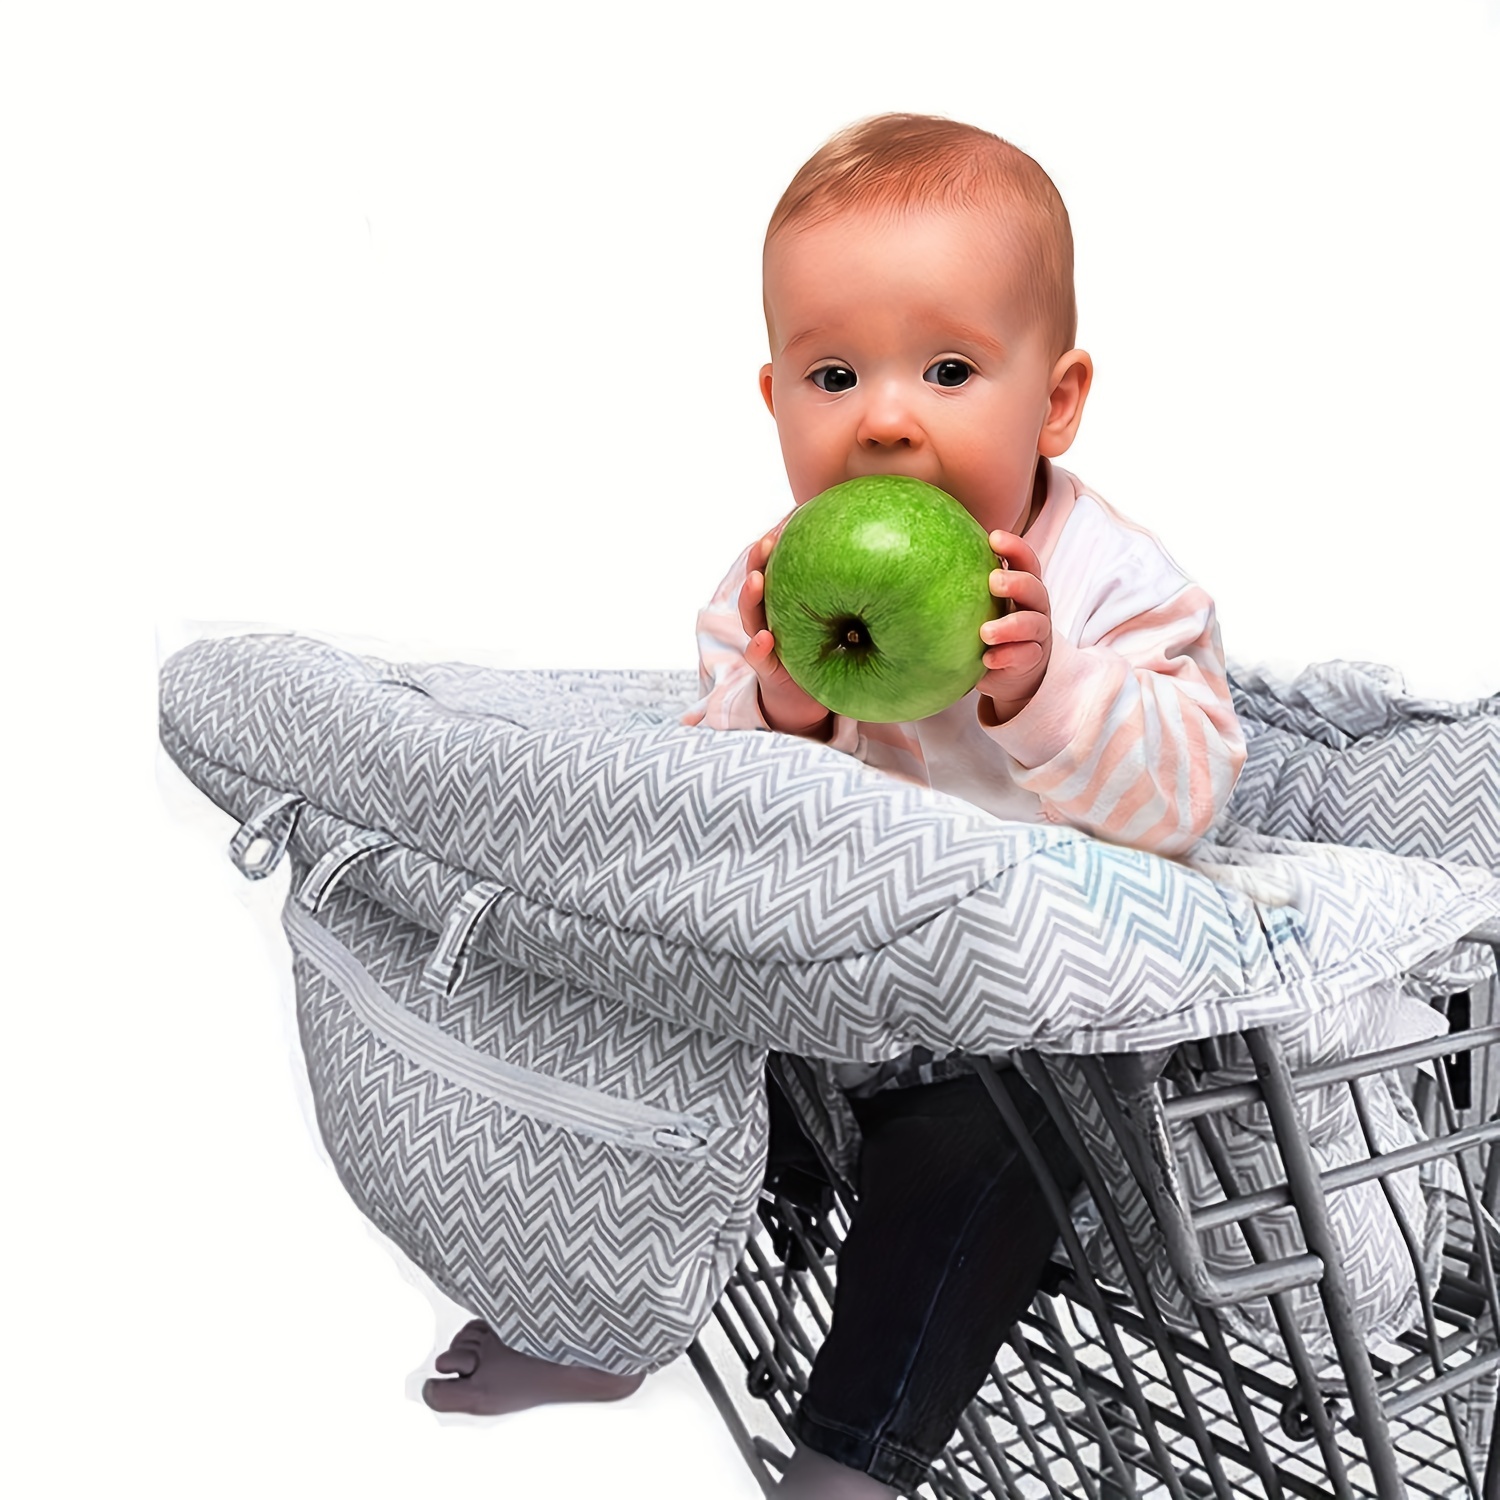  Pozico Funda para carrito de compras para bebé o silla alta,  cubierta de carrito de compras para bebé, lavable a máquina/bolsa de tela  portátil gratis, elefante azul bebé : Bebés